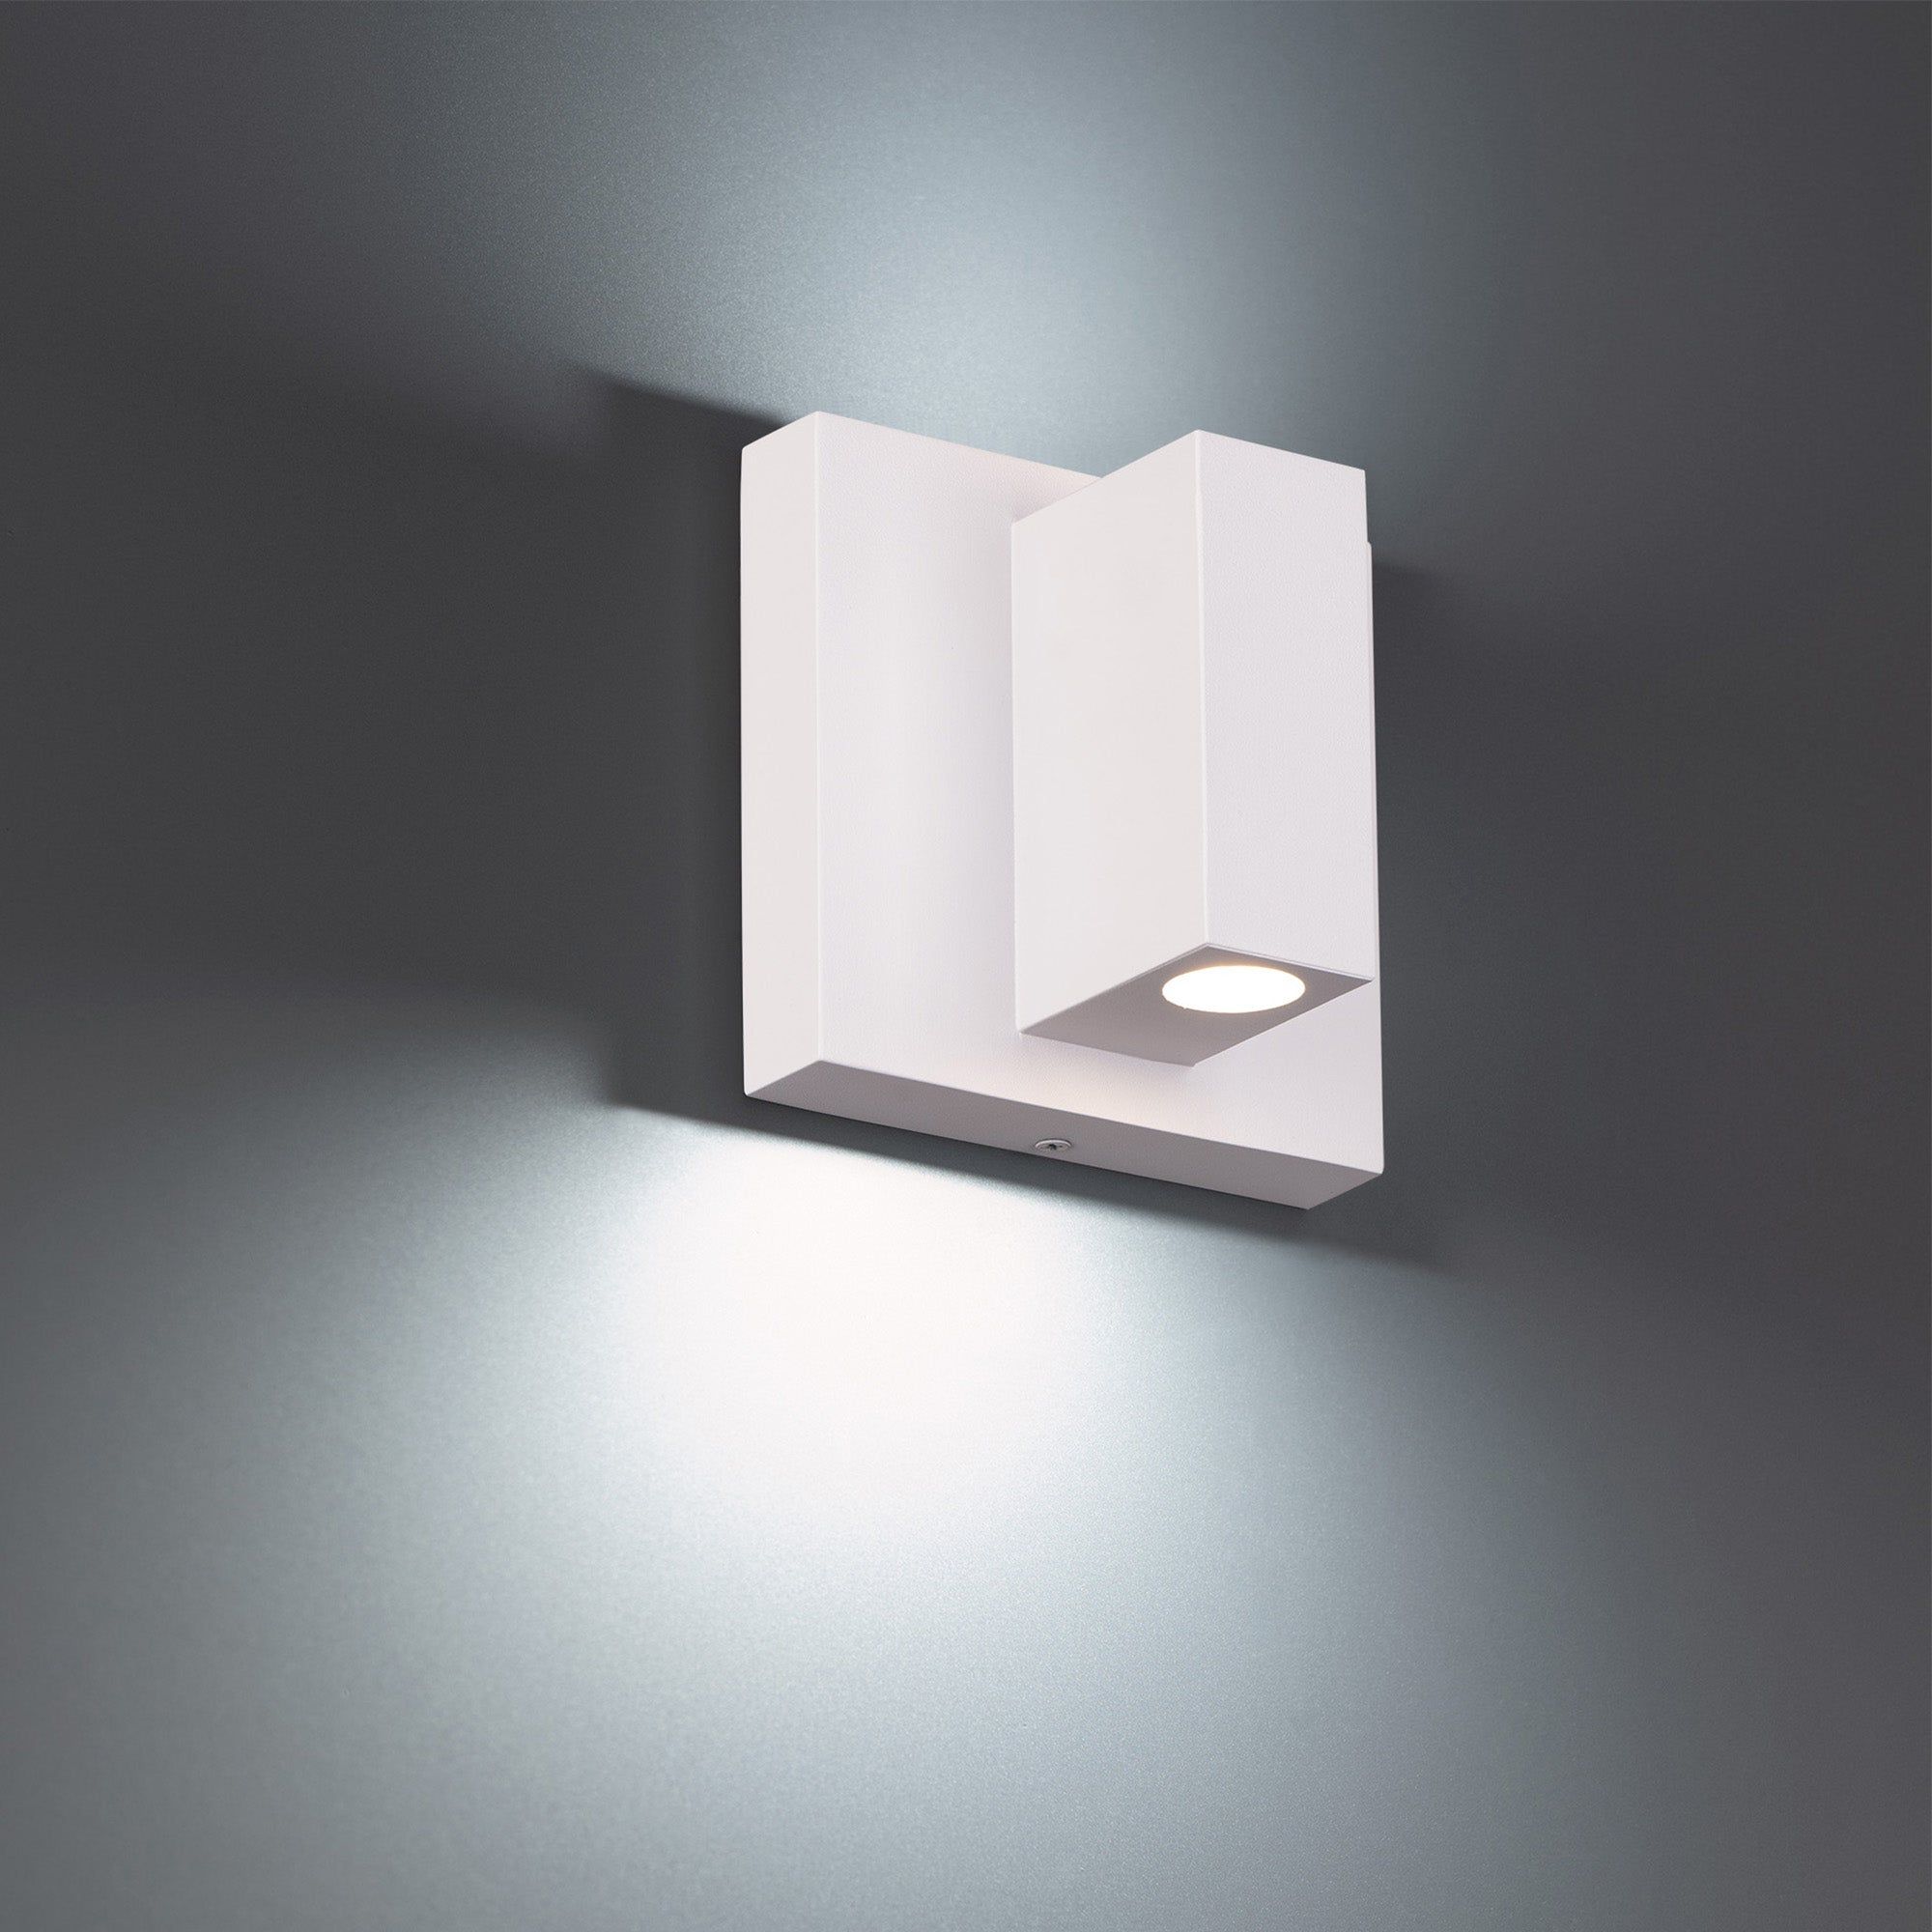 Vue 5" LED Indoor/Outdoor Wall Light